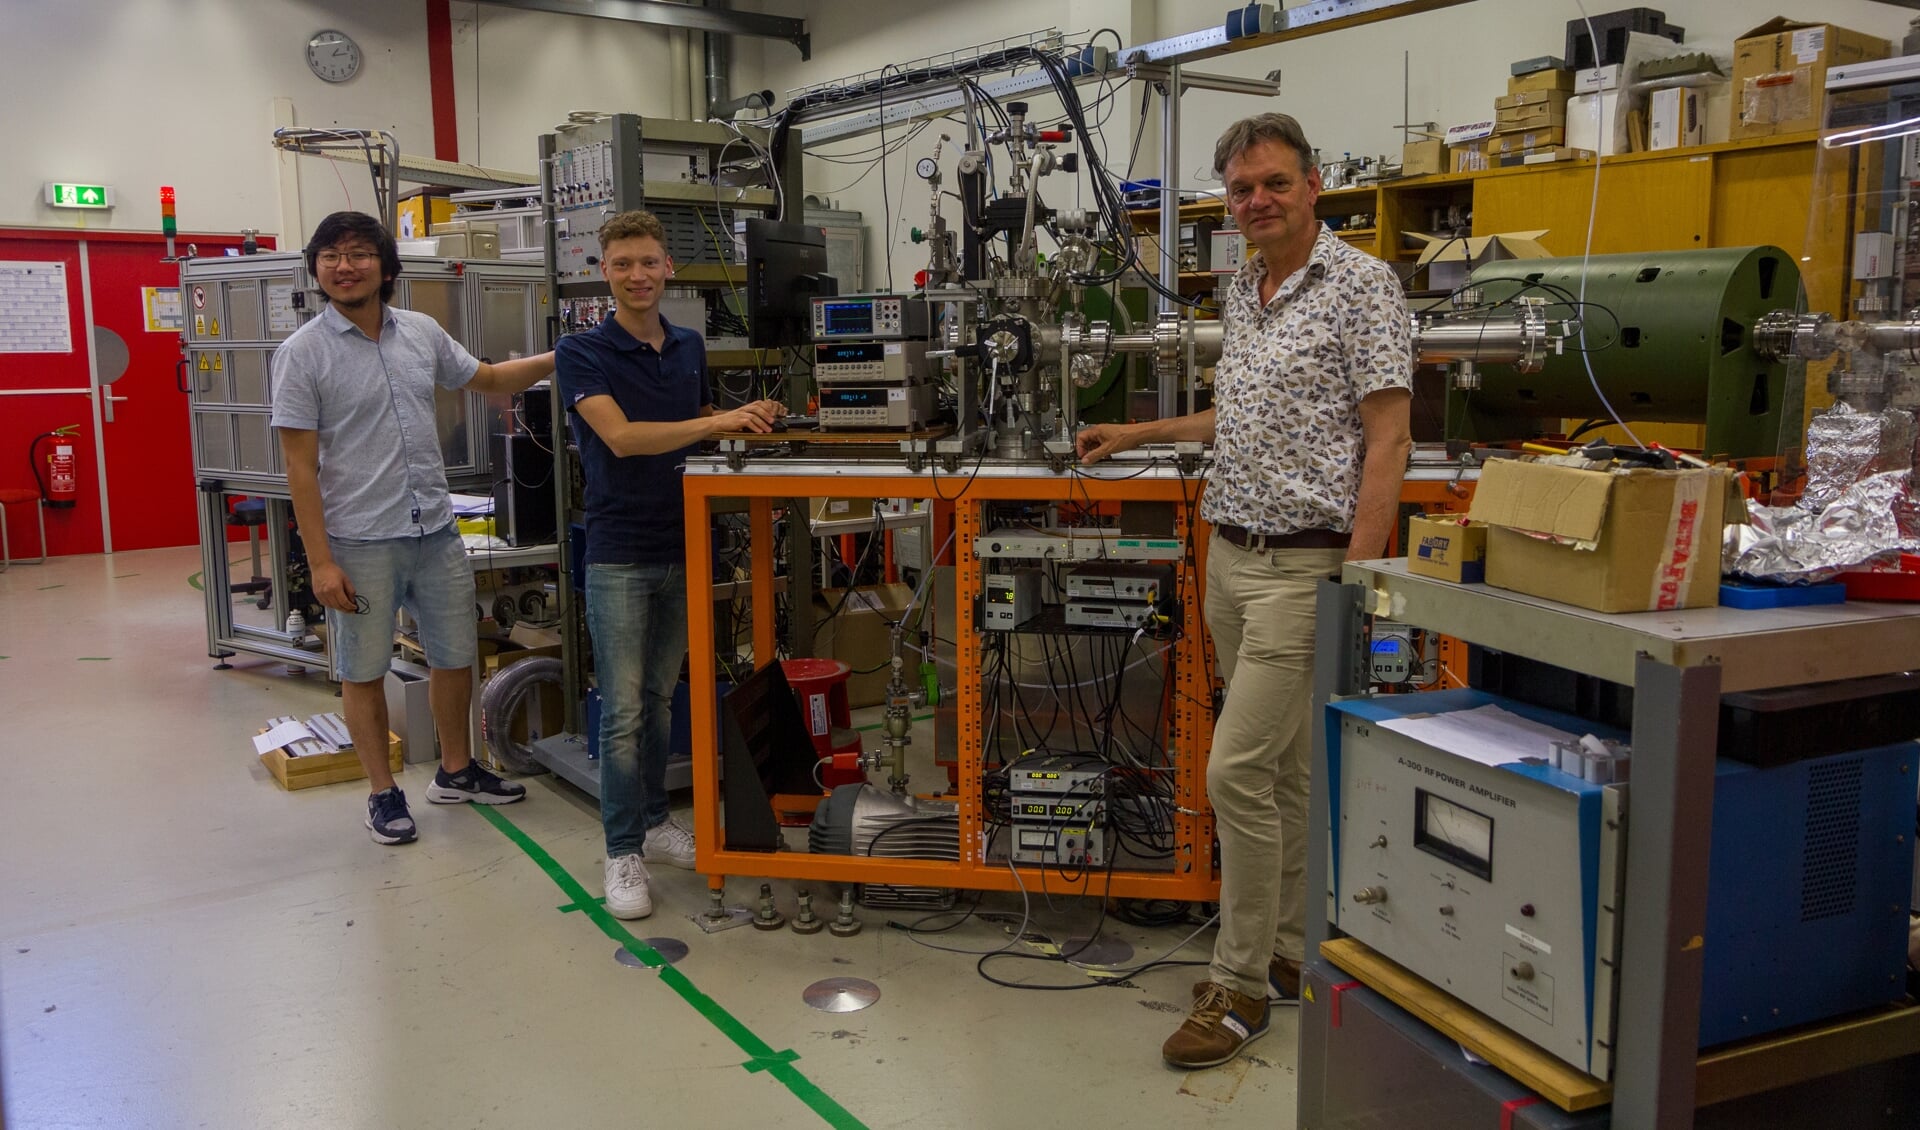 Van links naar rechts: de promovendi Subam Rai en Klaas Isaäc Bijlsma samen met professor Ronnie Hoekstra bij de onderzoeksopstelling in het Zernike Institute for Advanced Materials.